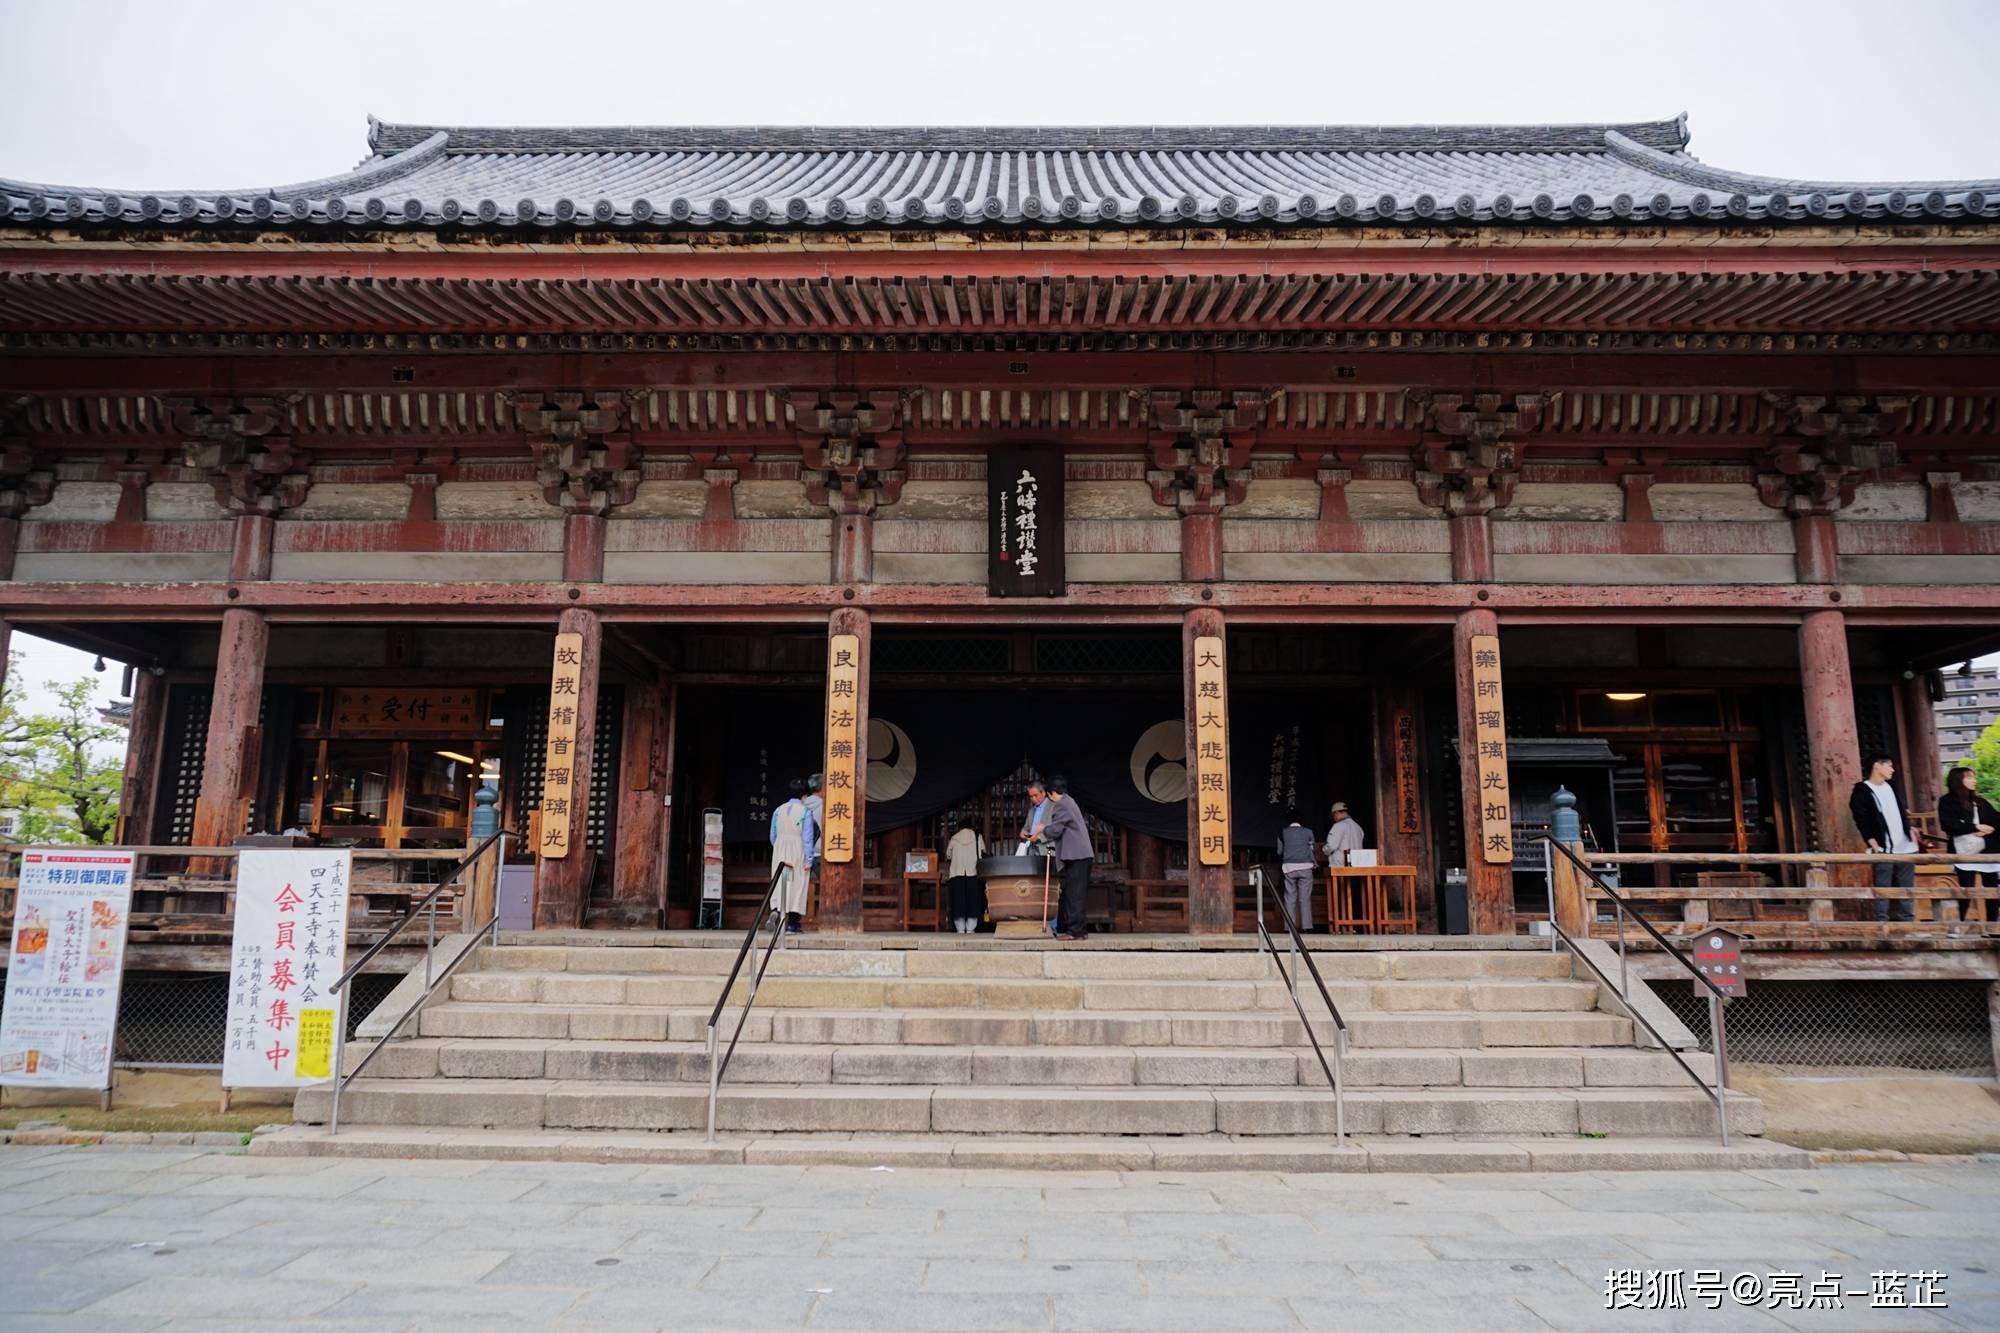 日本最古老的宫家寺院——大阪四天王寺